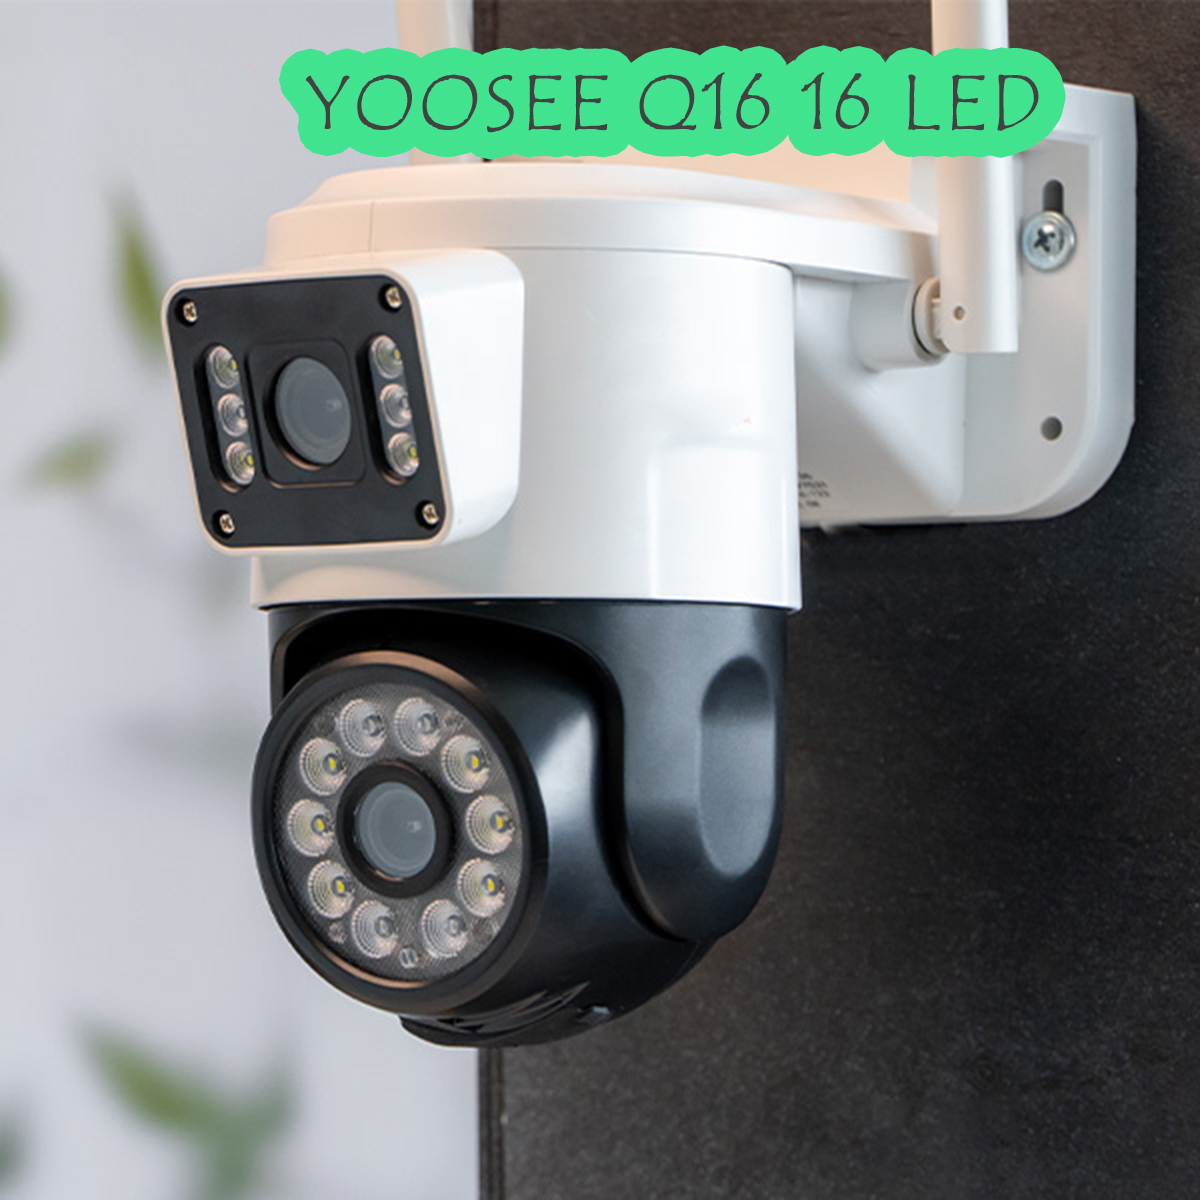 Camera Yoosee Wifi 2 Mắt Ngoài Trời 16 Led Xem 2 Màn Hình Cùng Lúc 6.0Mpx Chống Nước IP66 Hồng Ngoại Ban Đêm Có Màu